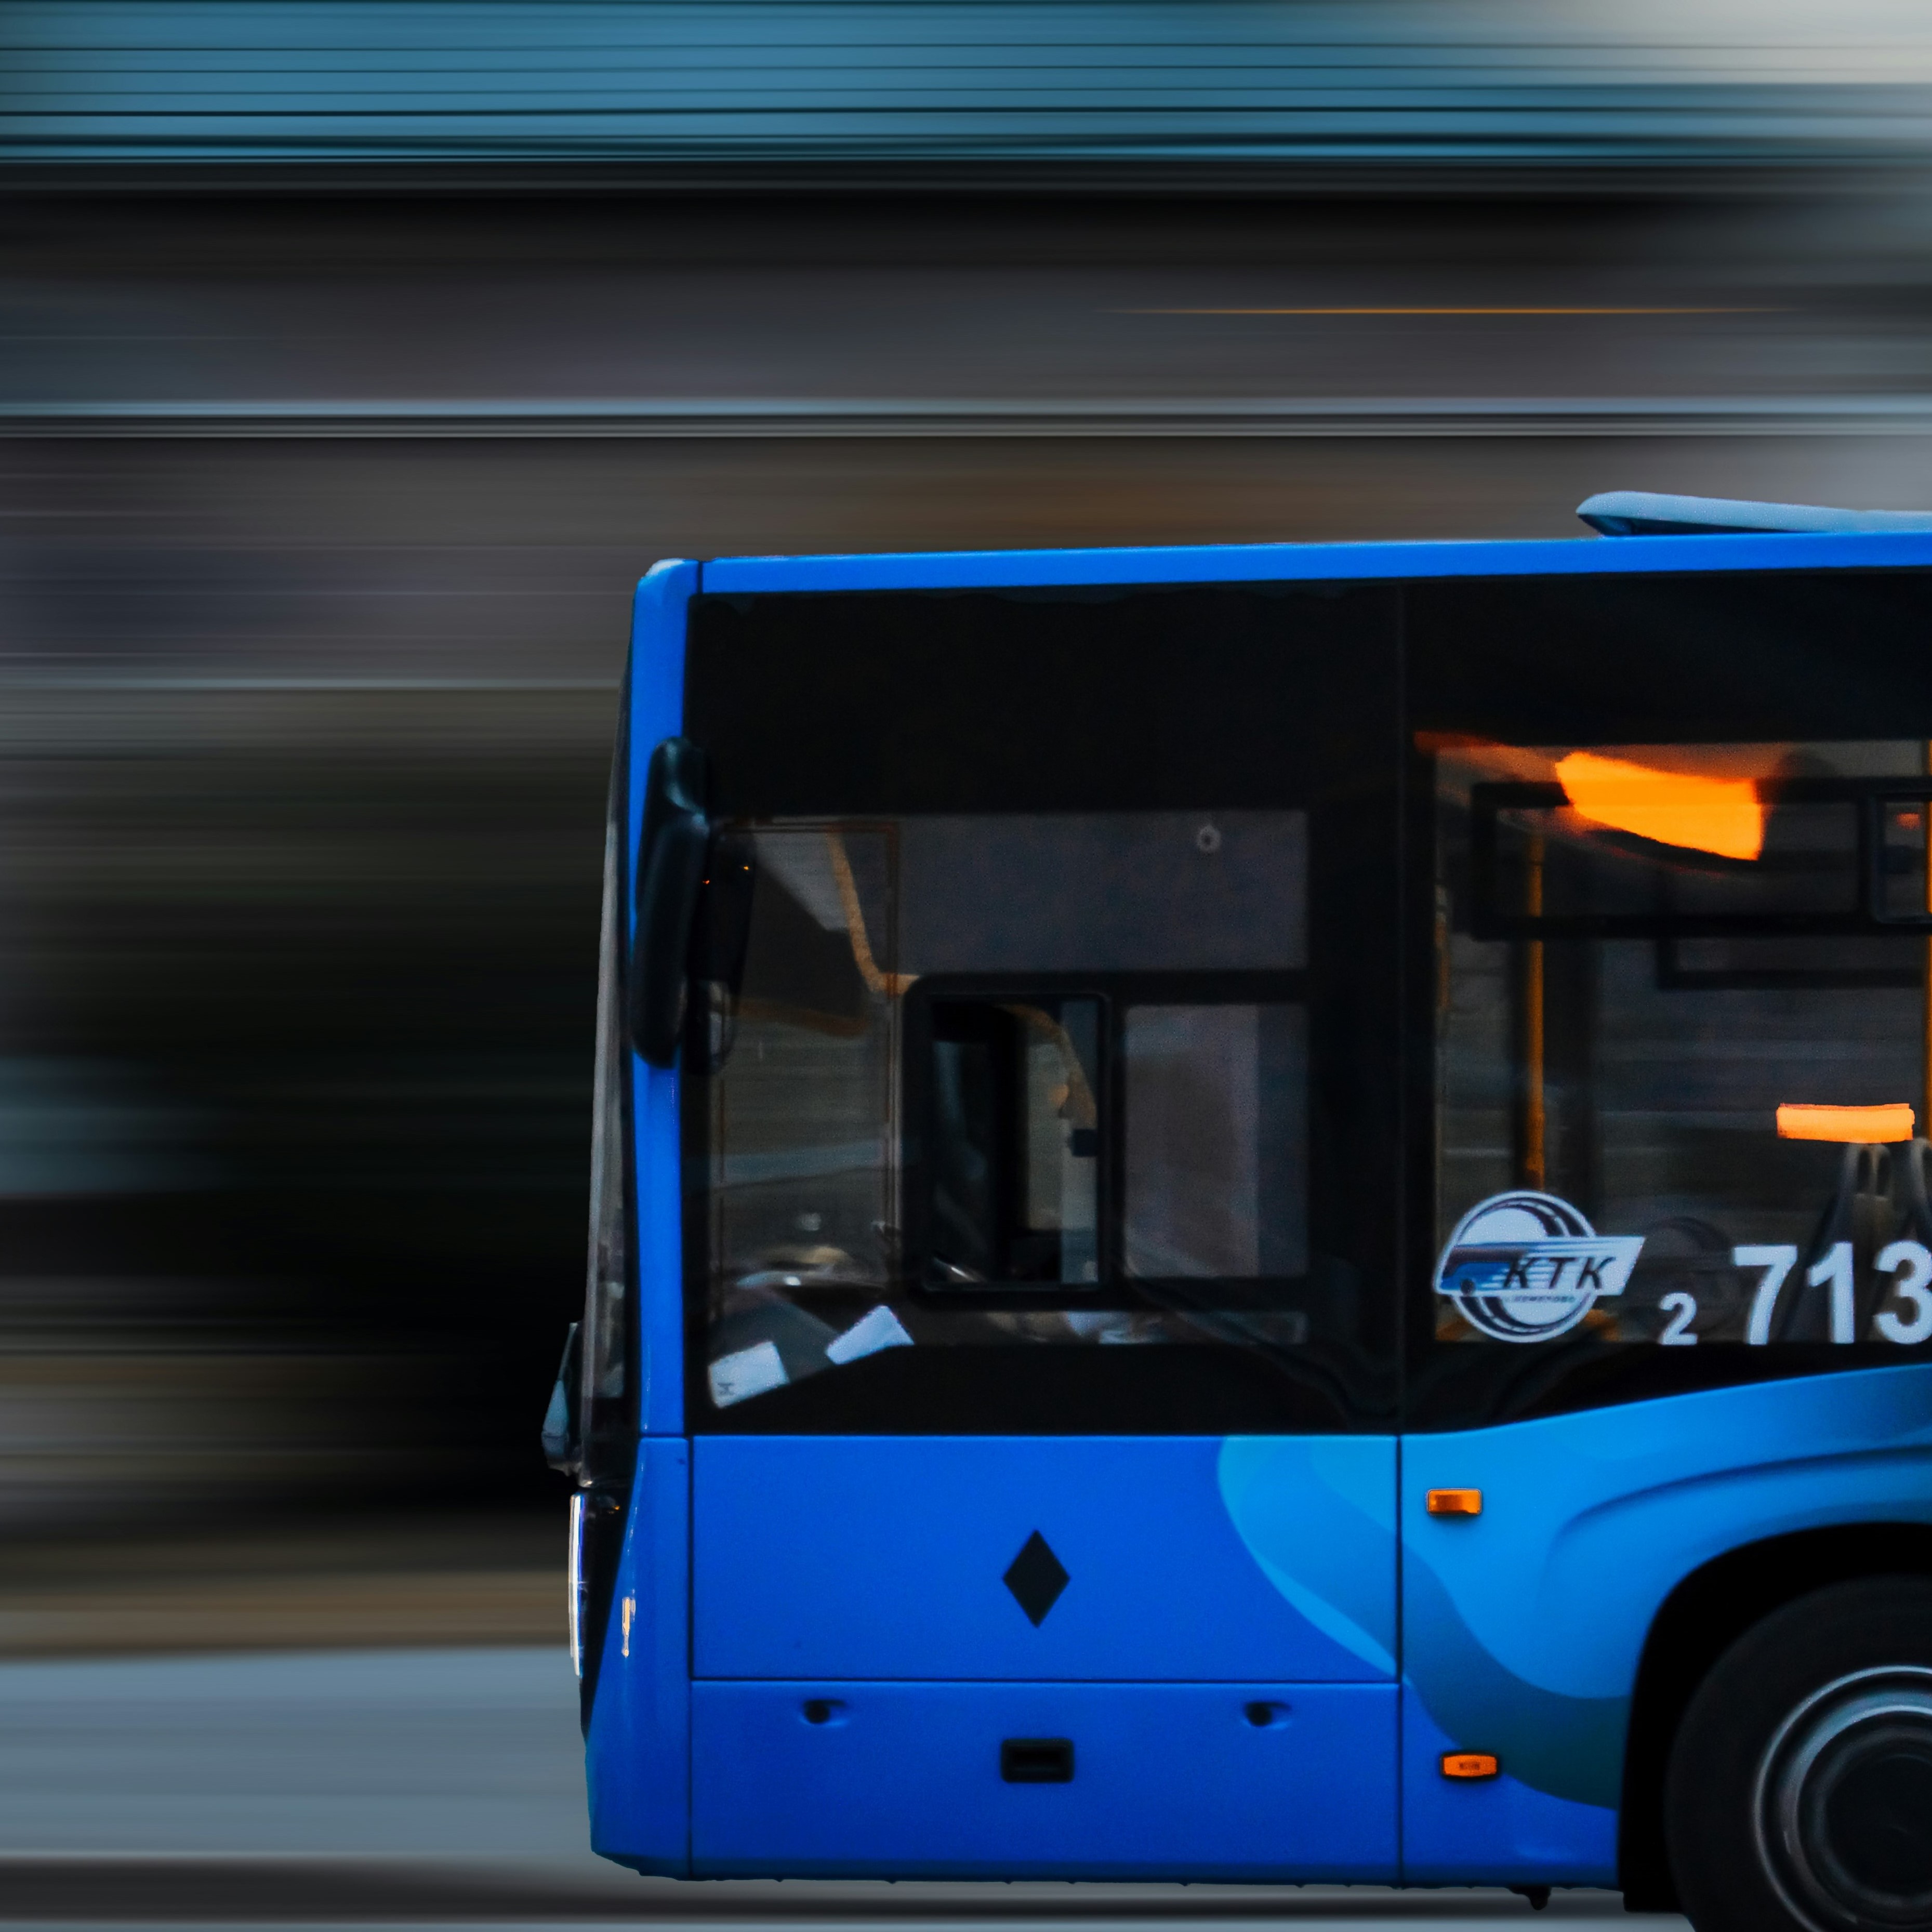 A blue bus.